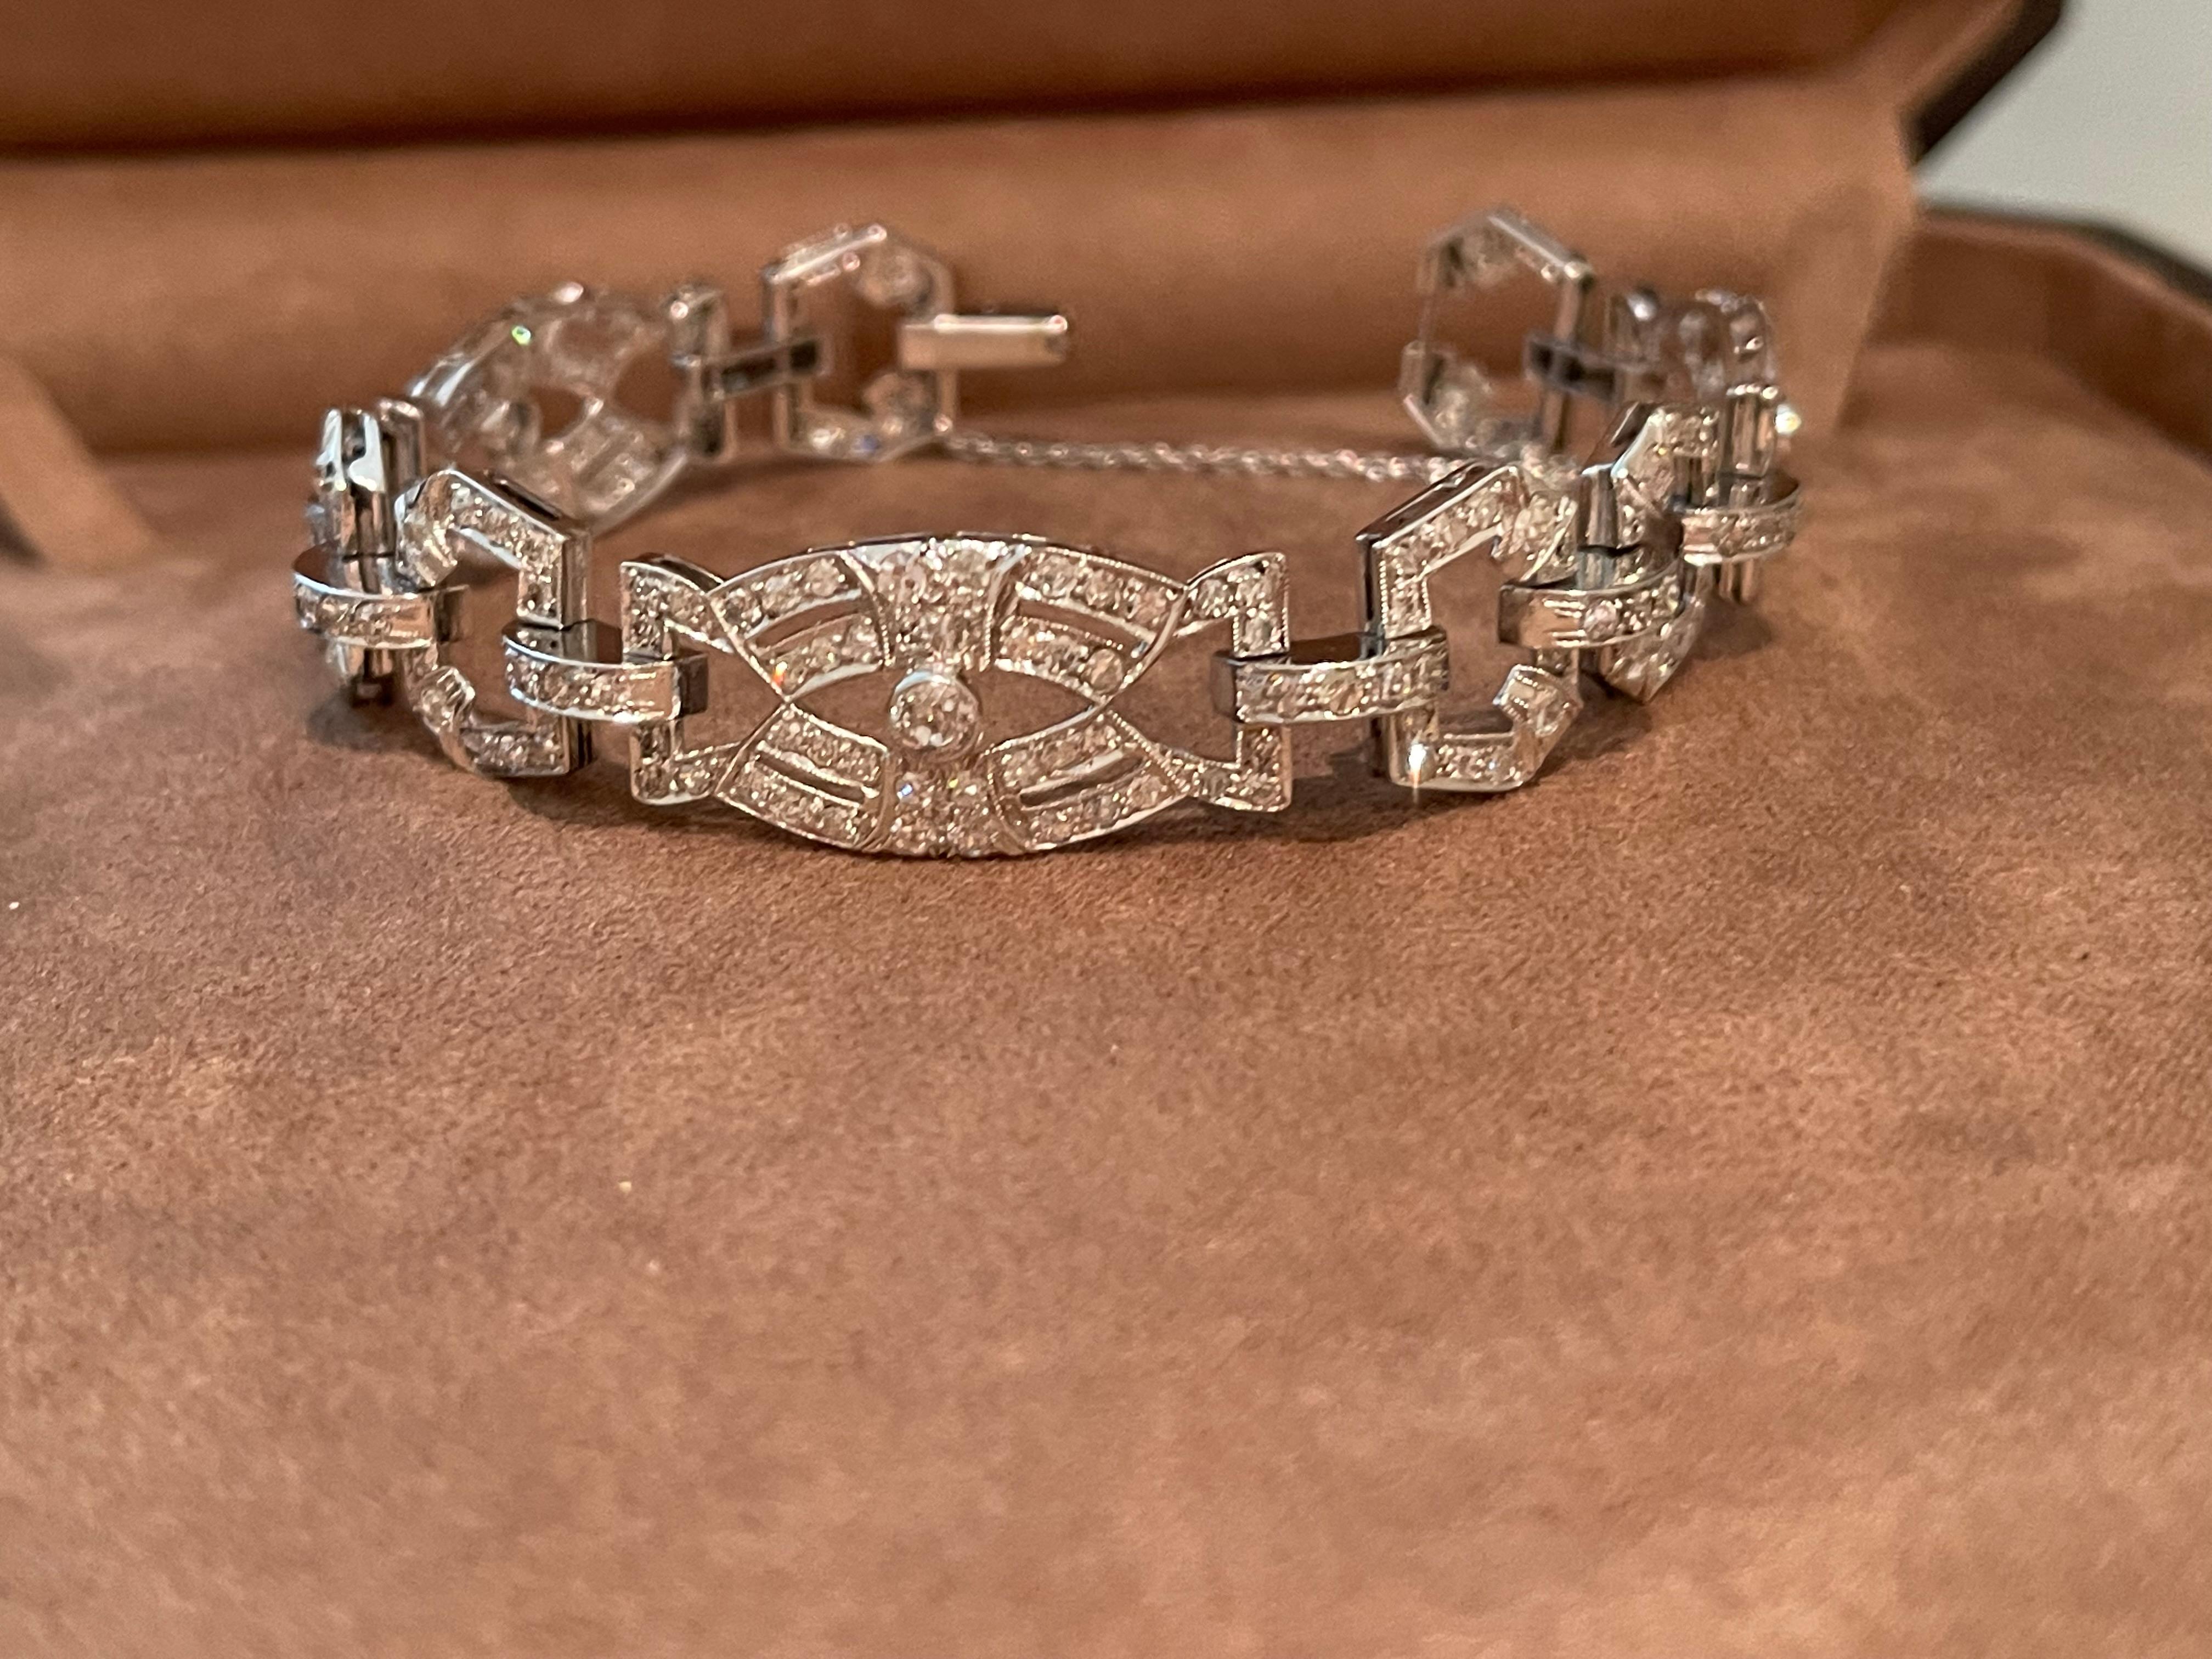 Ein wunderschönes Art-Déco-Diamantarmband in Platin gefasst. 
Dieses besondere Stück ist ein perfektes Beispiel für die Kunstfertigkeit und Eleganz des Art déco! Das Armband ist als durchbrochene Platte mit diamantbesetzten Gliedern gestaltet. Die